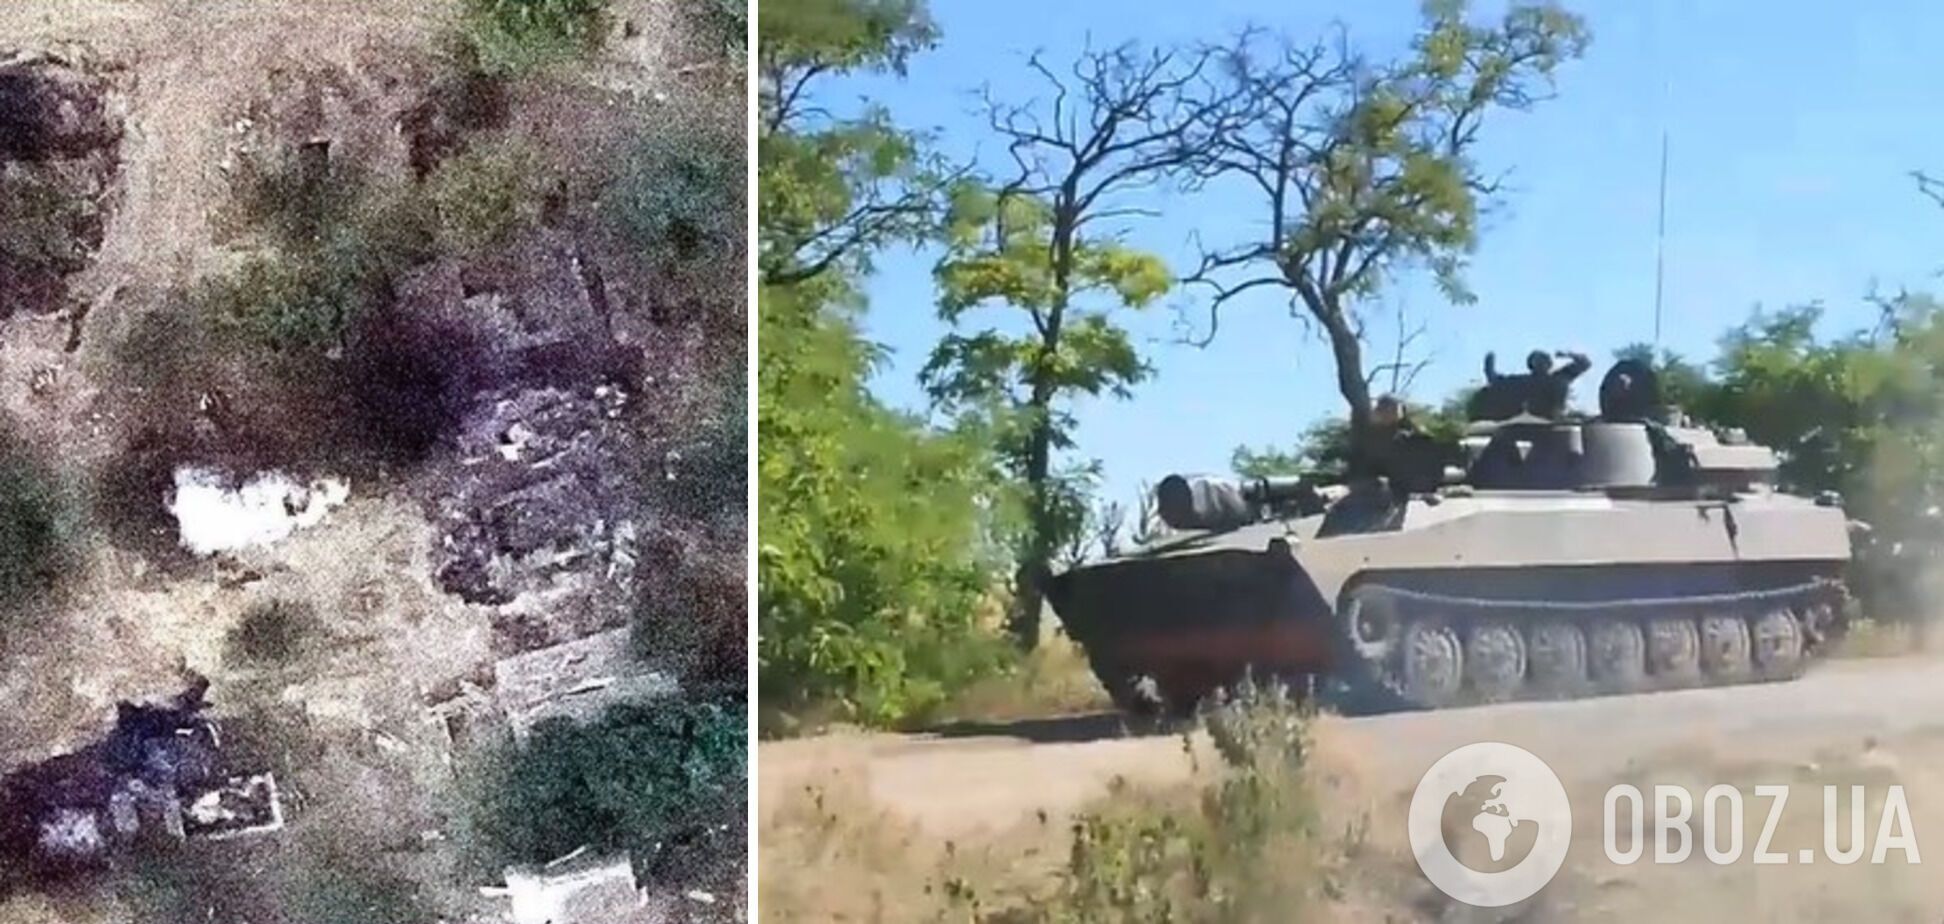 "Демилитаризация" продолжается: украинские морпехи уничтожили бензовозы, БМП и боекомплект оккупантов. Видео